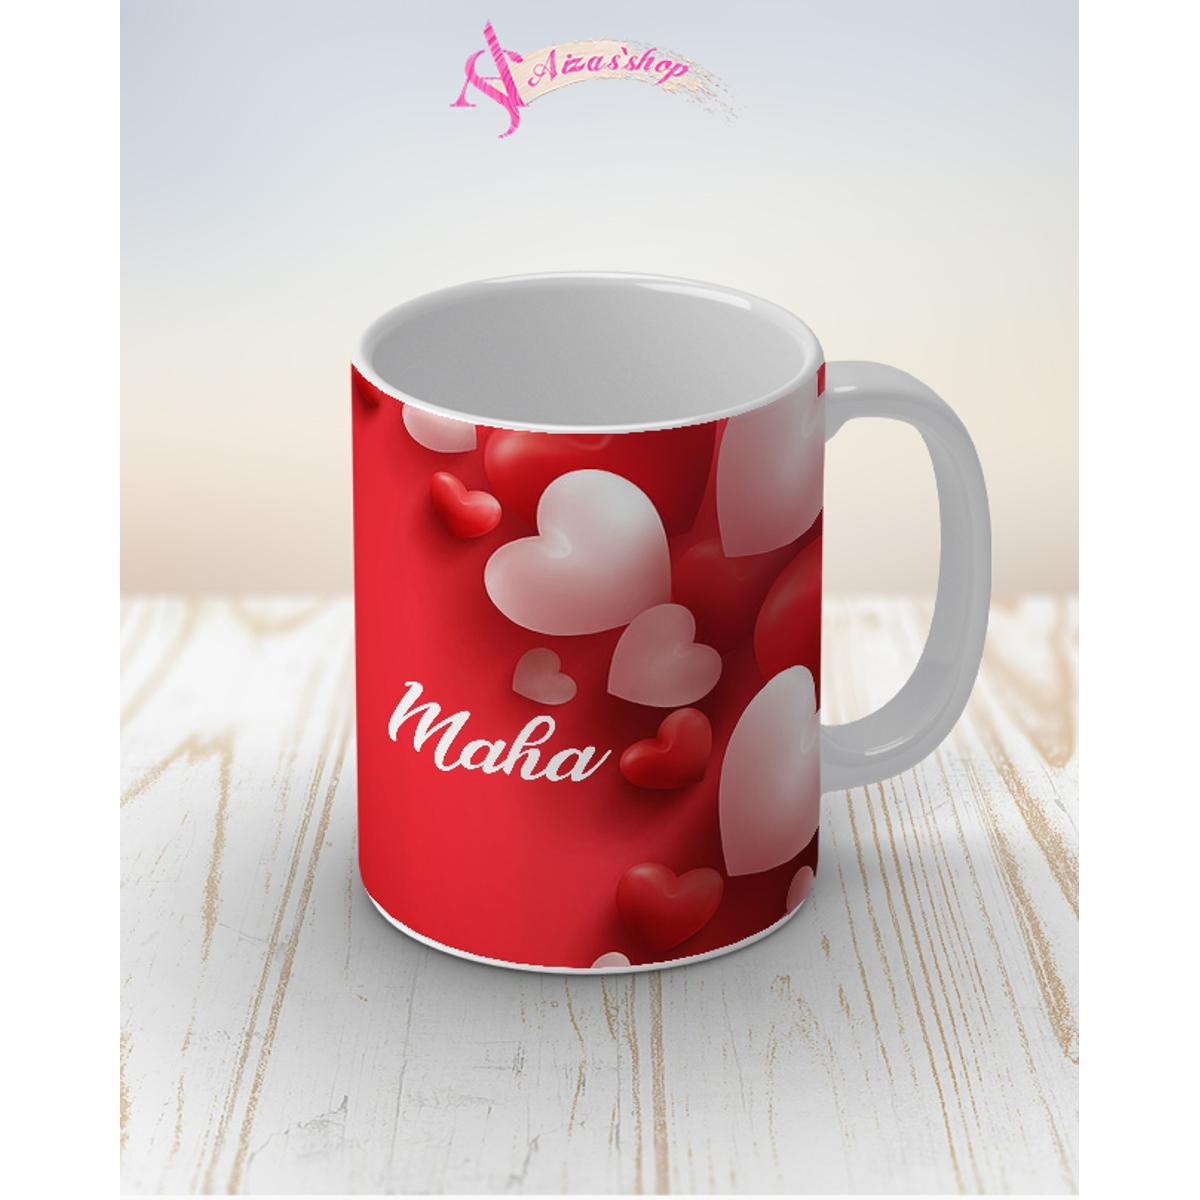 Maha name mug: Buy Online at Best Prices in Pakistan | Daraz.pk